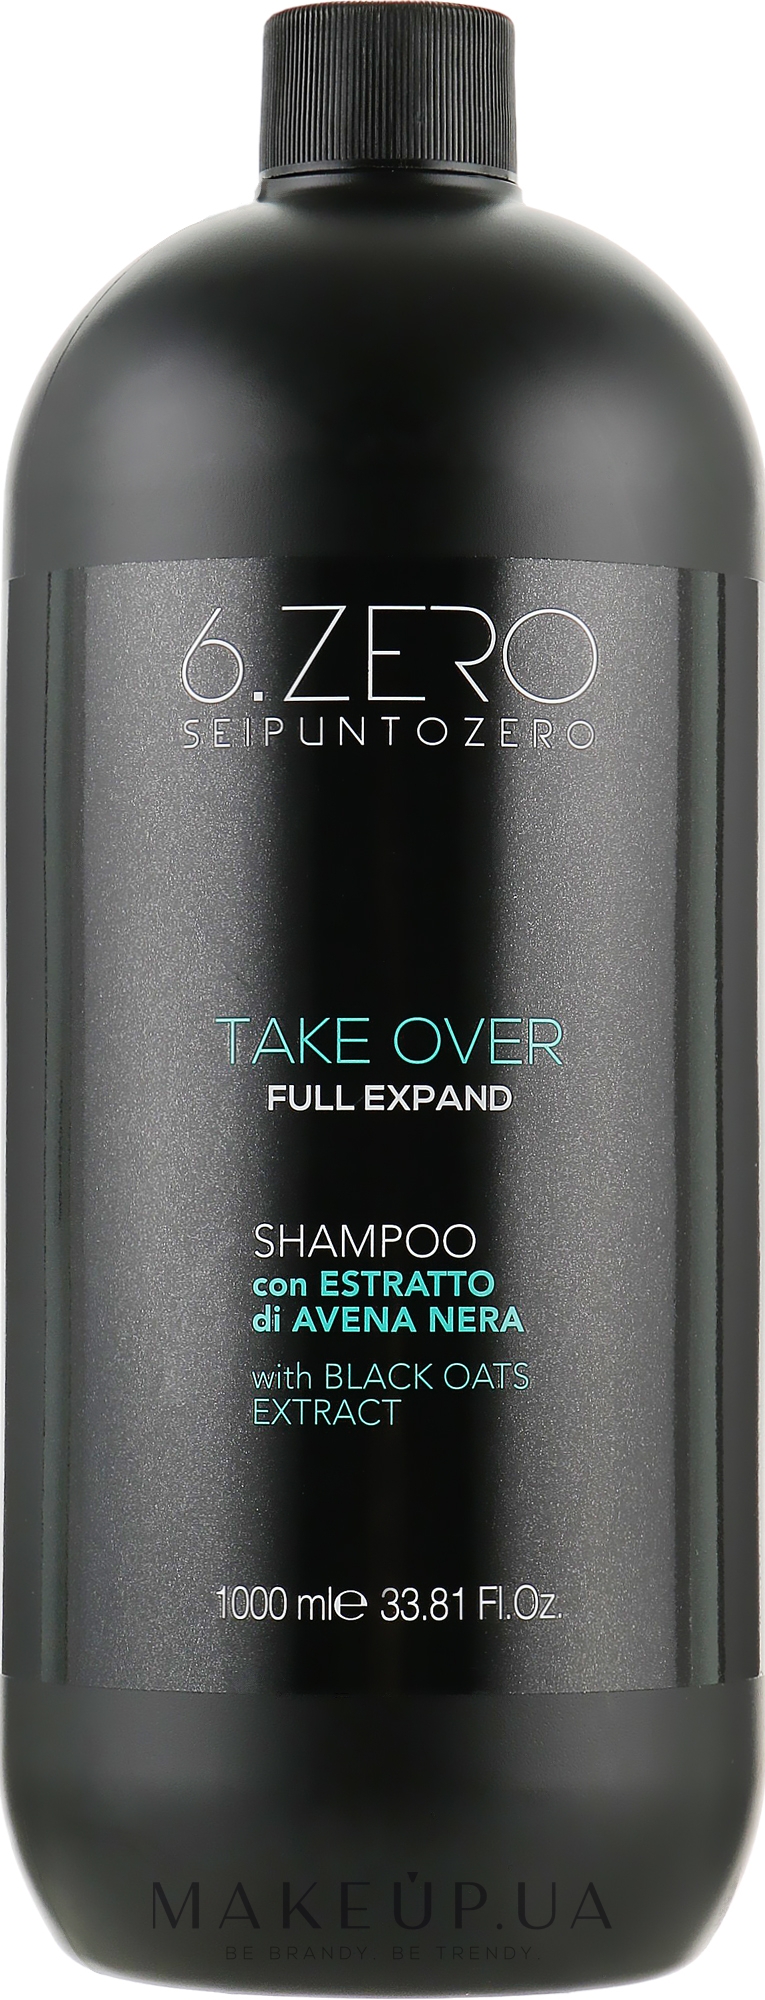 Шампунь для тонкого волосся - Seipuntozero Take Over Full Expand Shampoo — фото 1000ml